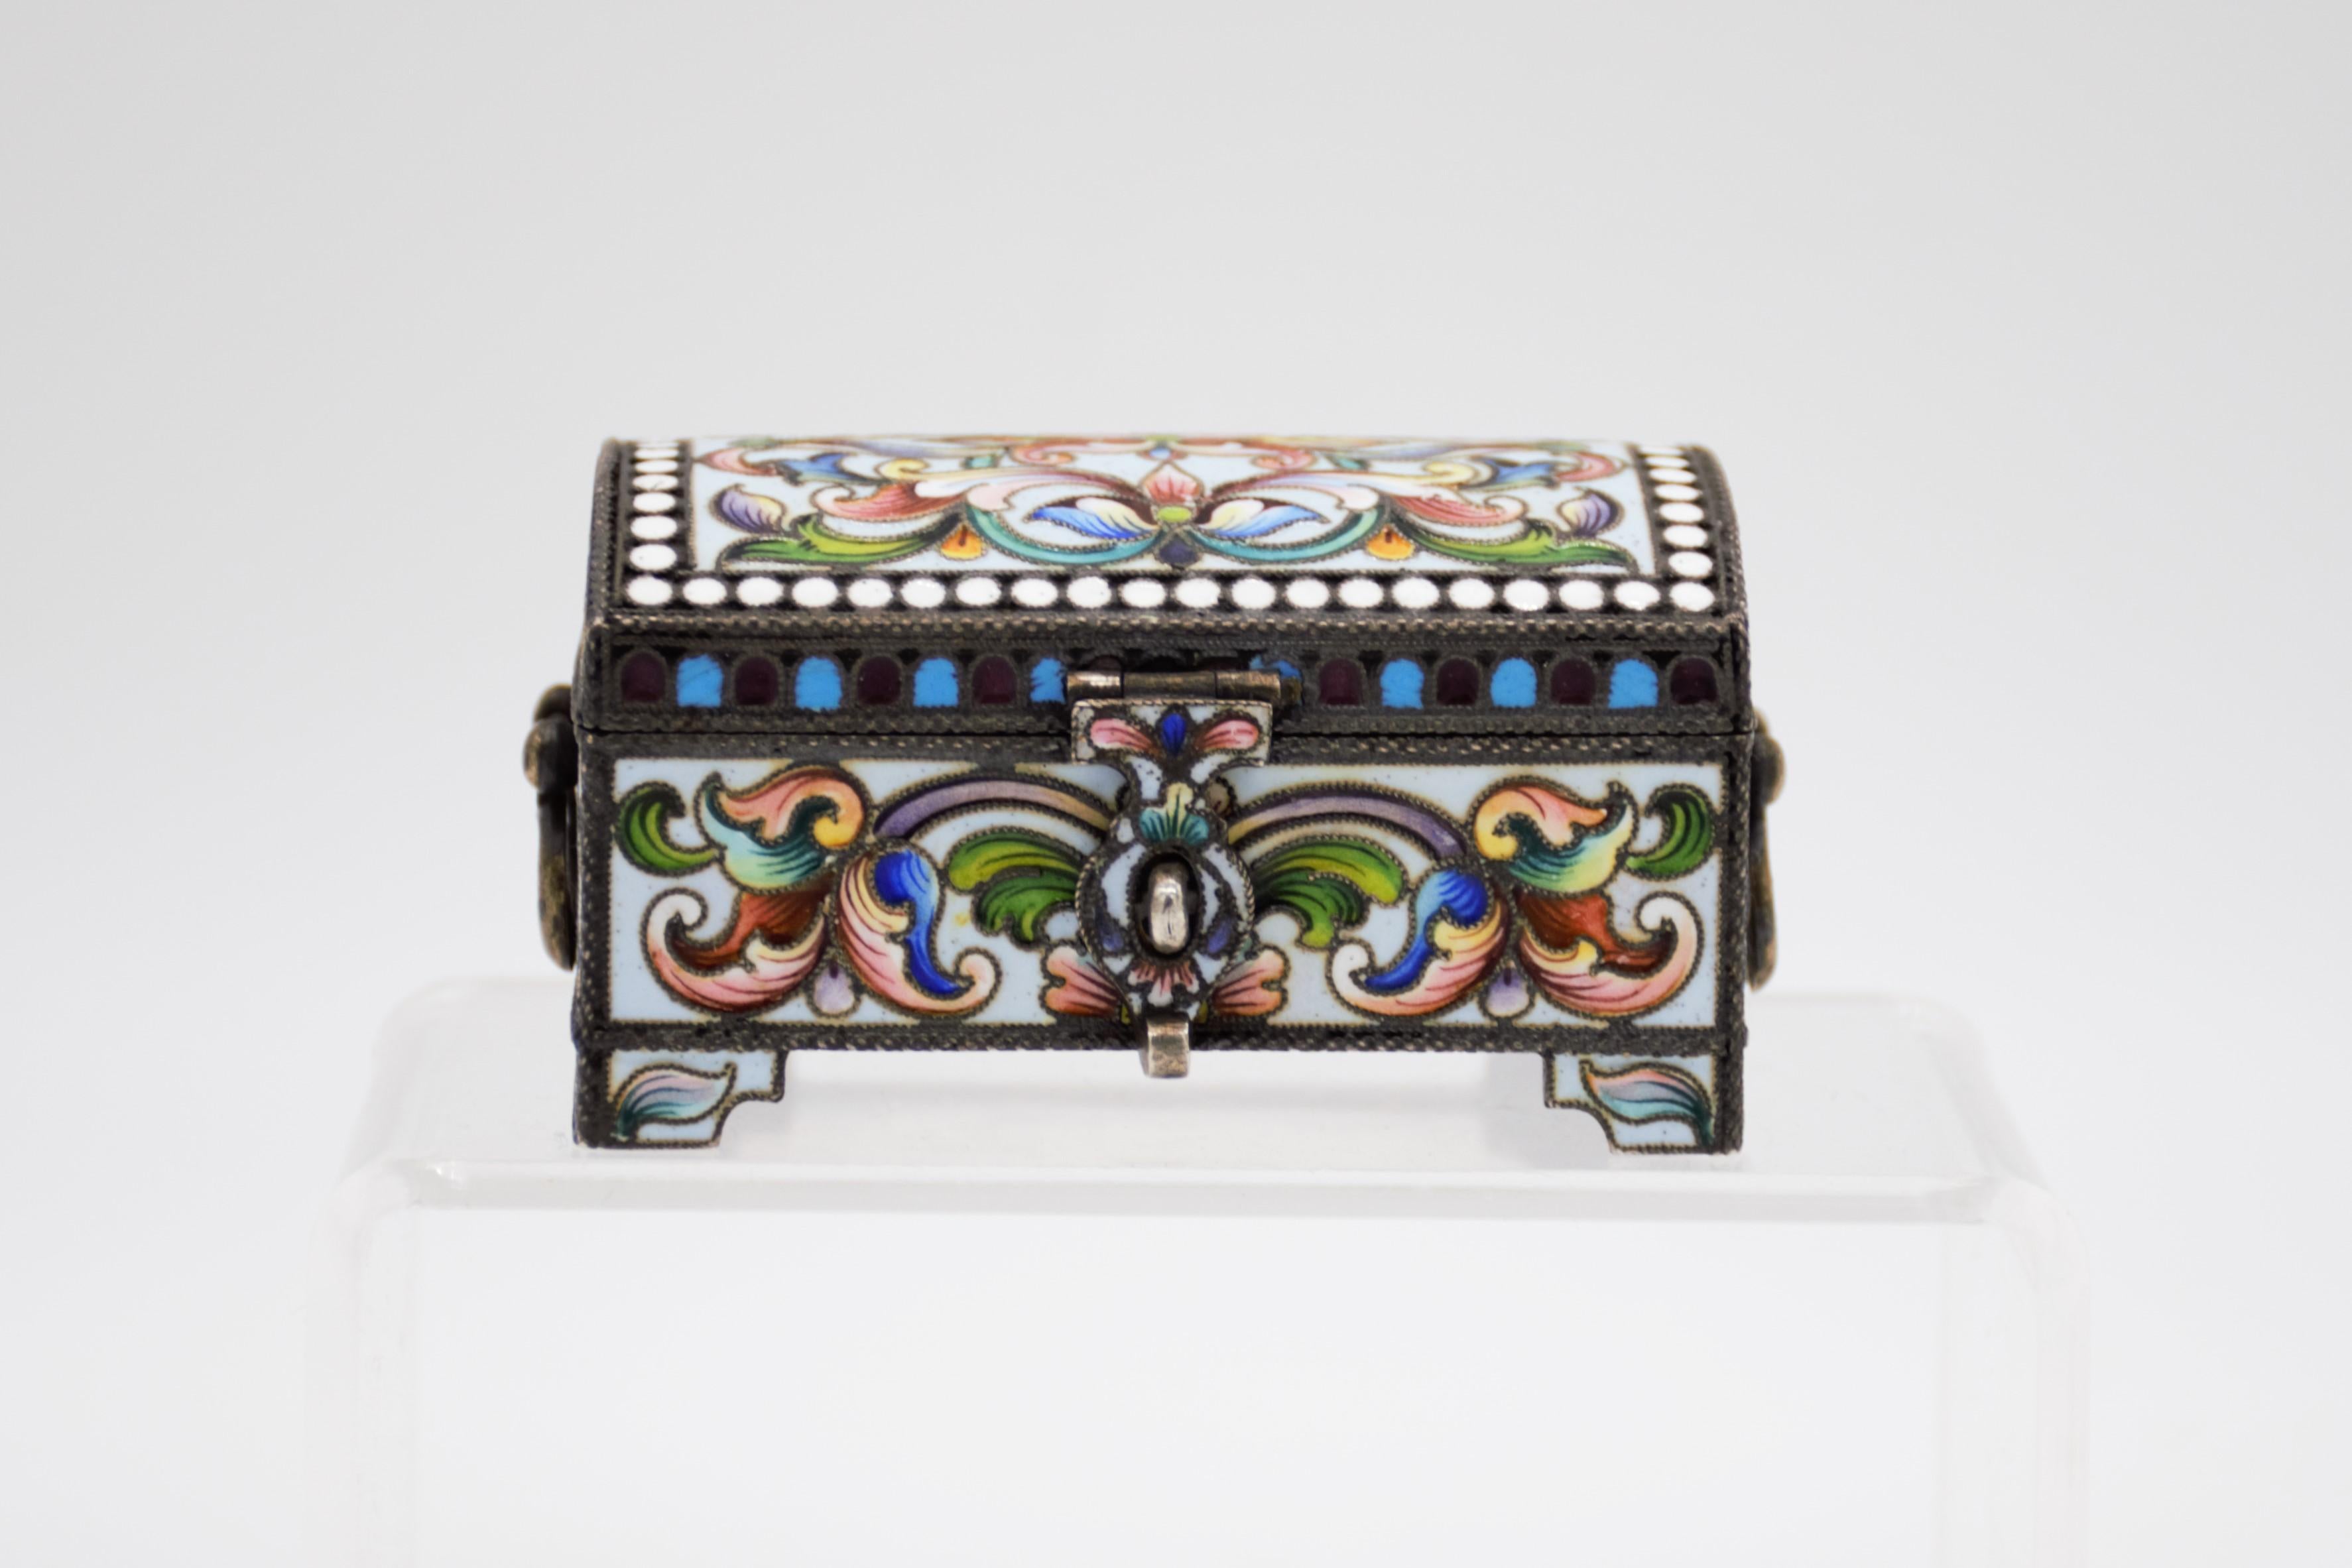 Cette boîte en forme de coffre à trésor est luxueusement décorée et date des dernières décennies de la période impériale. La boîte a été produite par l'atelier de Maria Semonova et est formée d'argent de grade 875 avec du vermeil utilisé partout. La